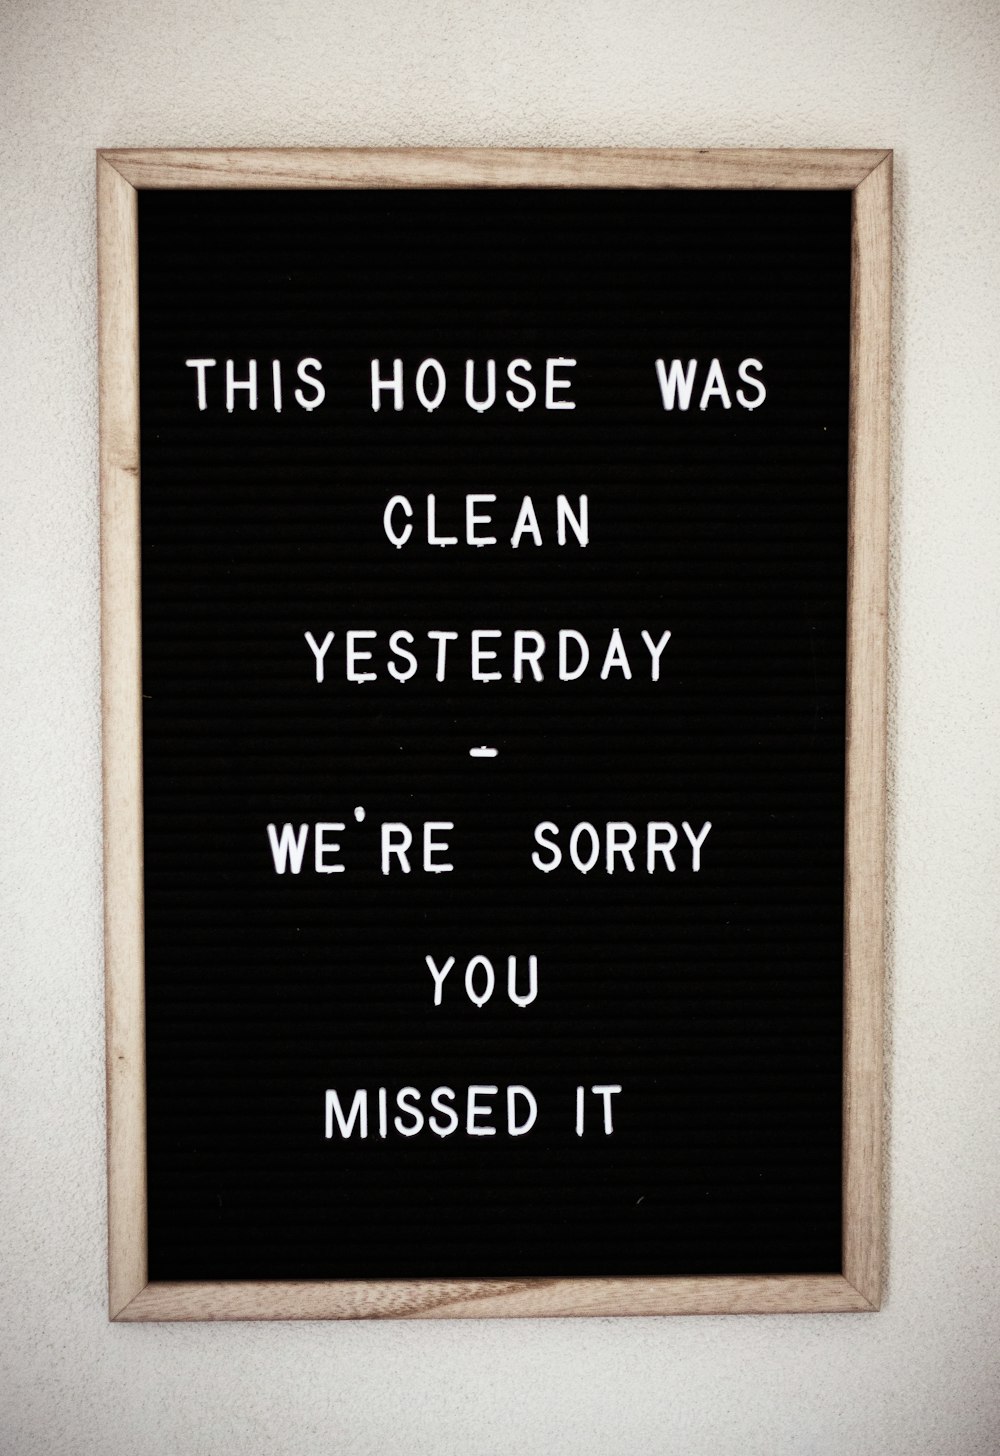 Dieses Haus war gestern sauber, es tut uns leid, dass Sie es verpasst haben Text